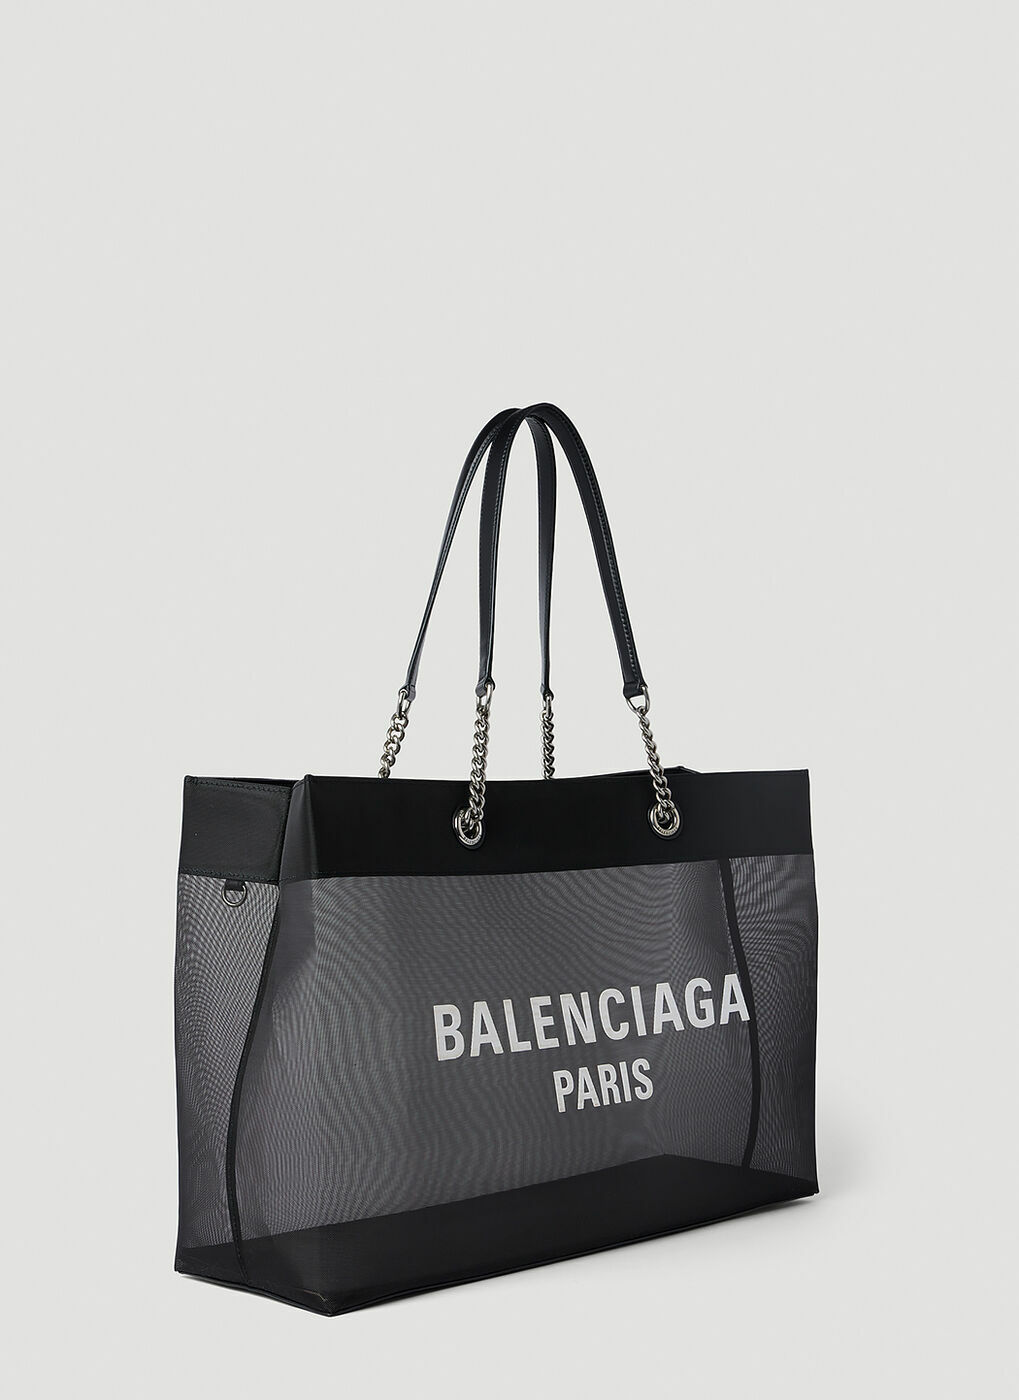 Balenciaga - Duty Free Tote Bag in Black Balenciaga